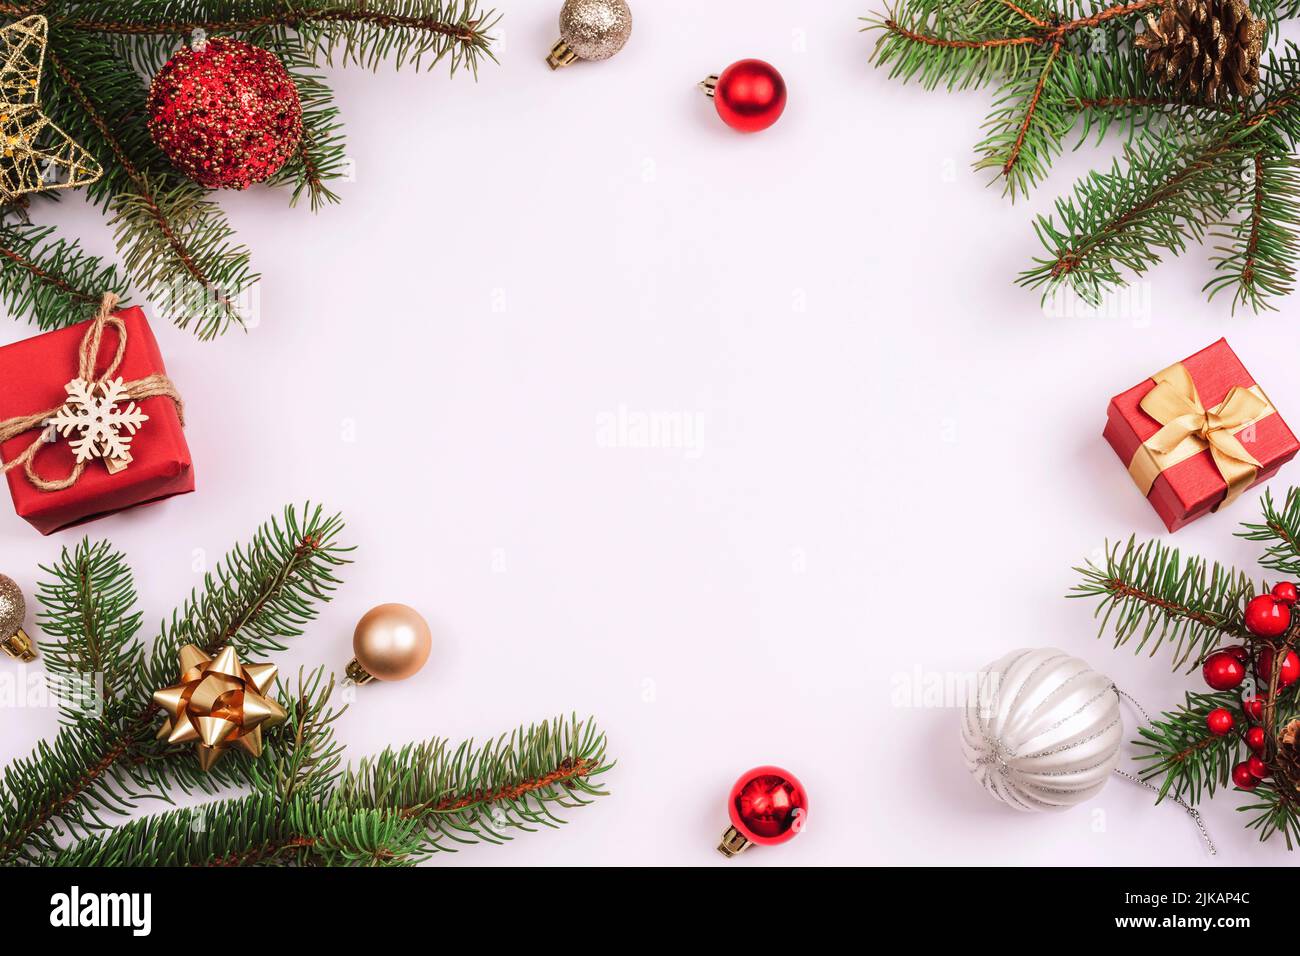 Sfondo natalizio, rami di abete, scatole regalo, palline rosse e decorazioni natalizie su sfondo bianco. Vista dall'alto, disposizione piatta, spazio di copia Foto Stock